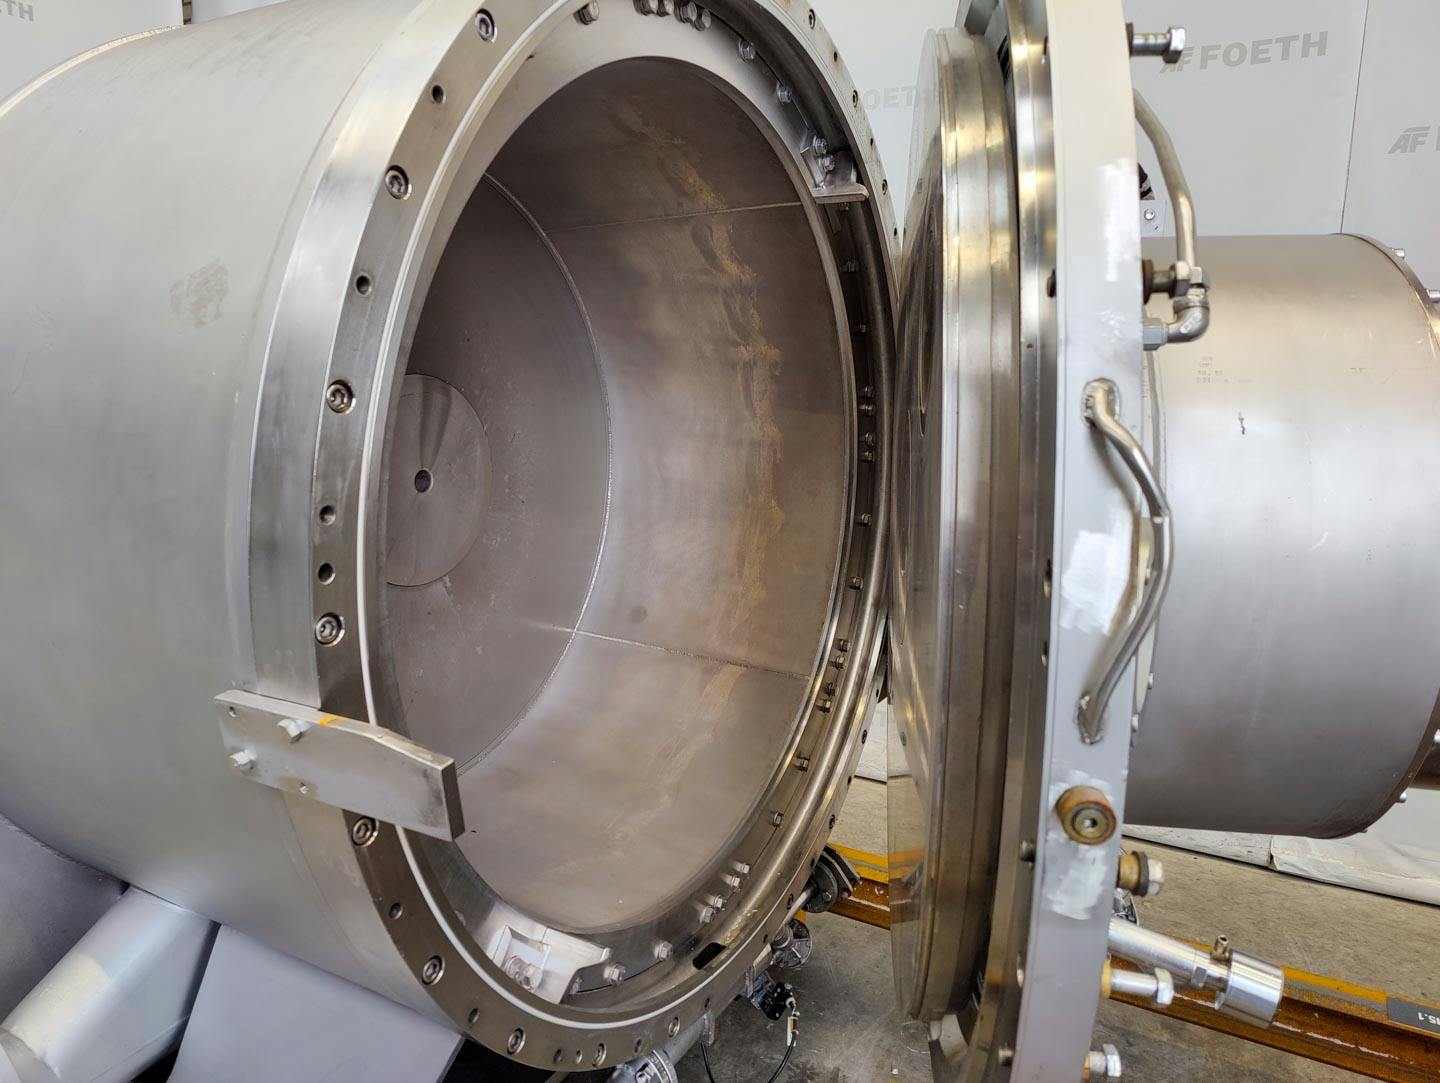 Fima Process Trockner TZT-1300 - centrifuge dryer - Trommelcentrifuge - image 6